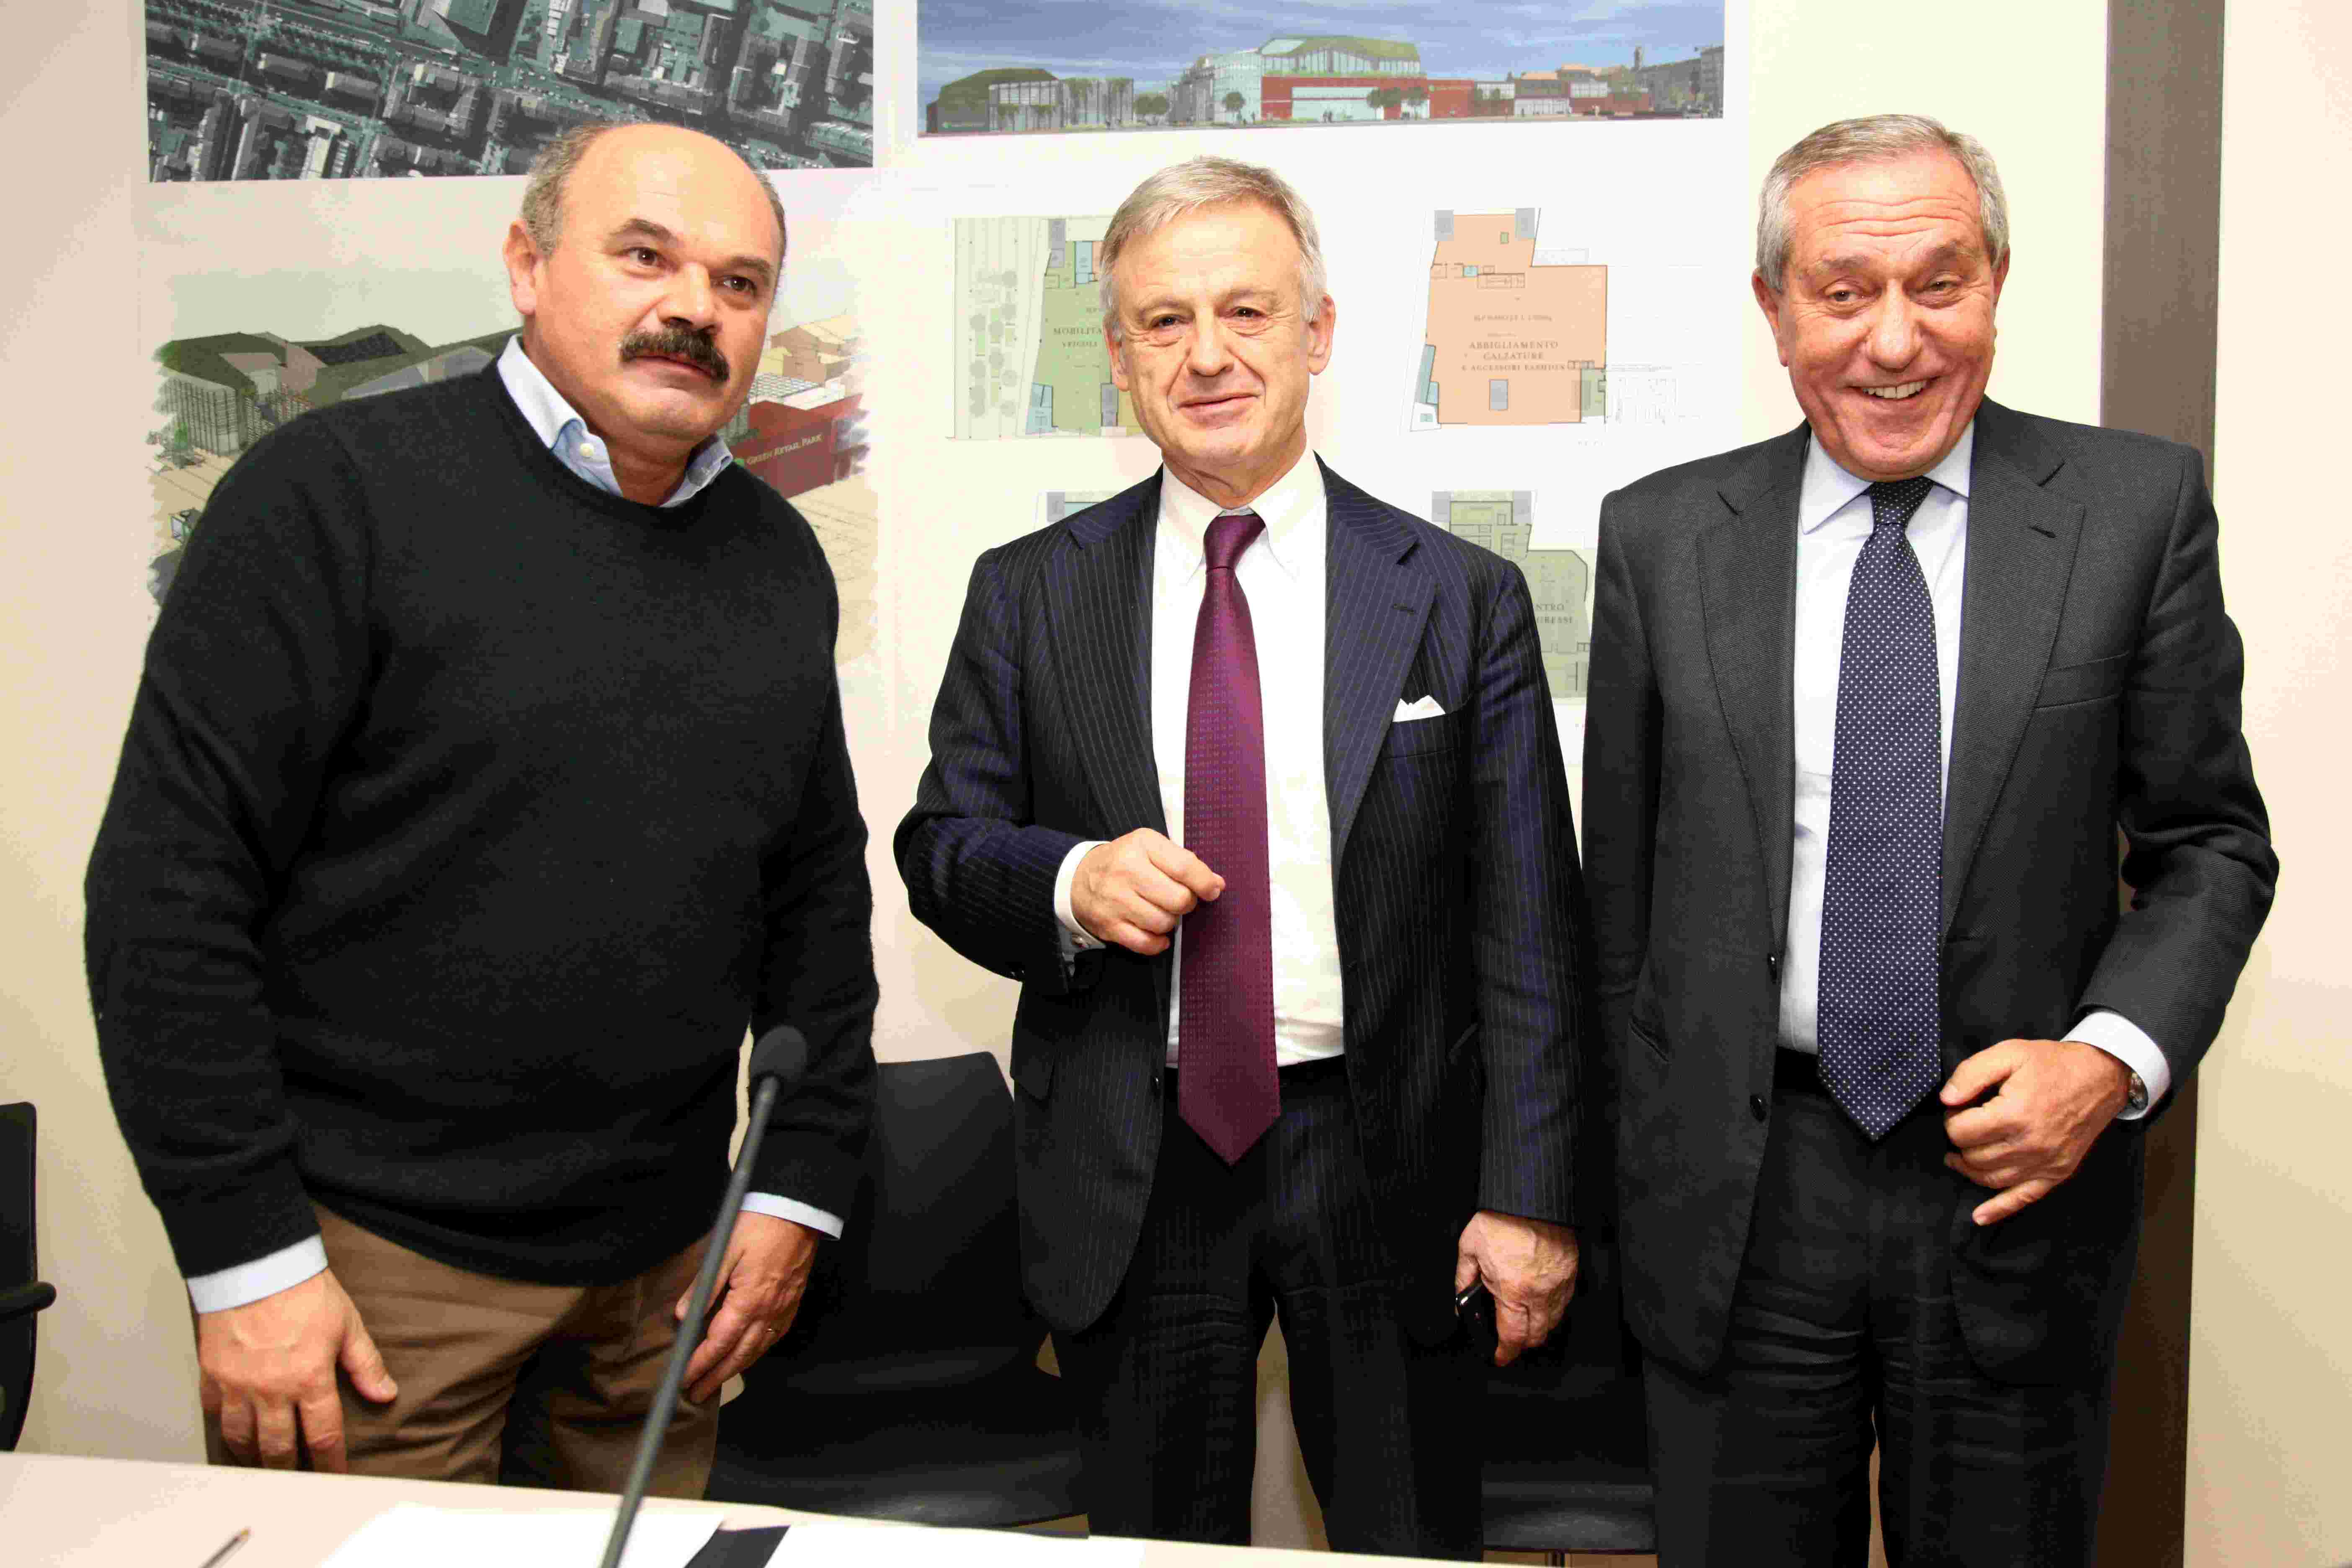  Eataly e Italo firmano con il Ministero dell’Ambiente,